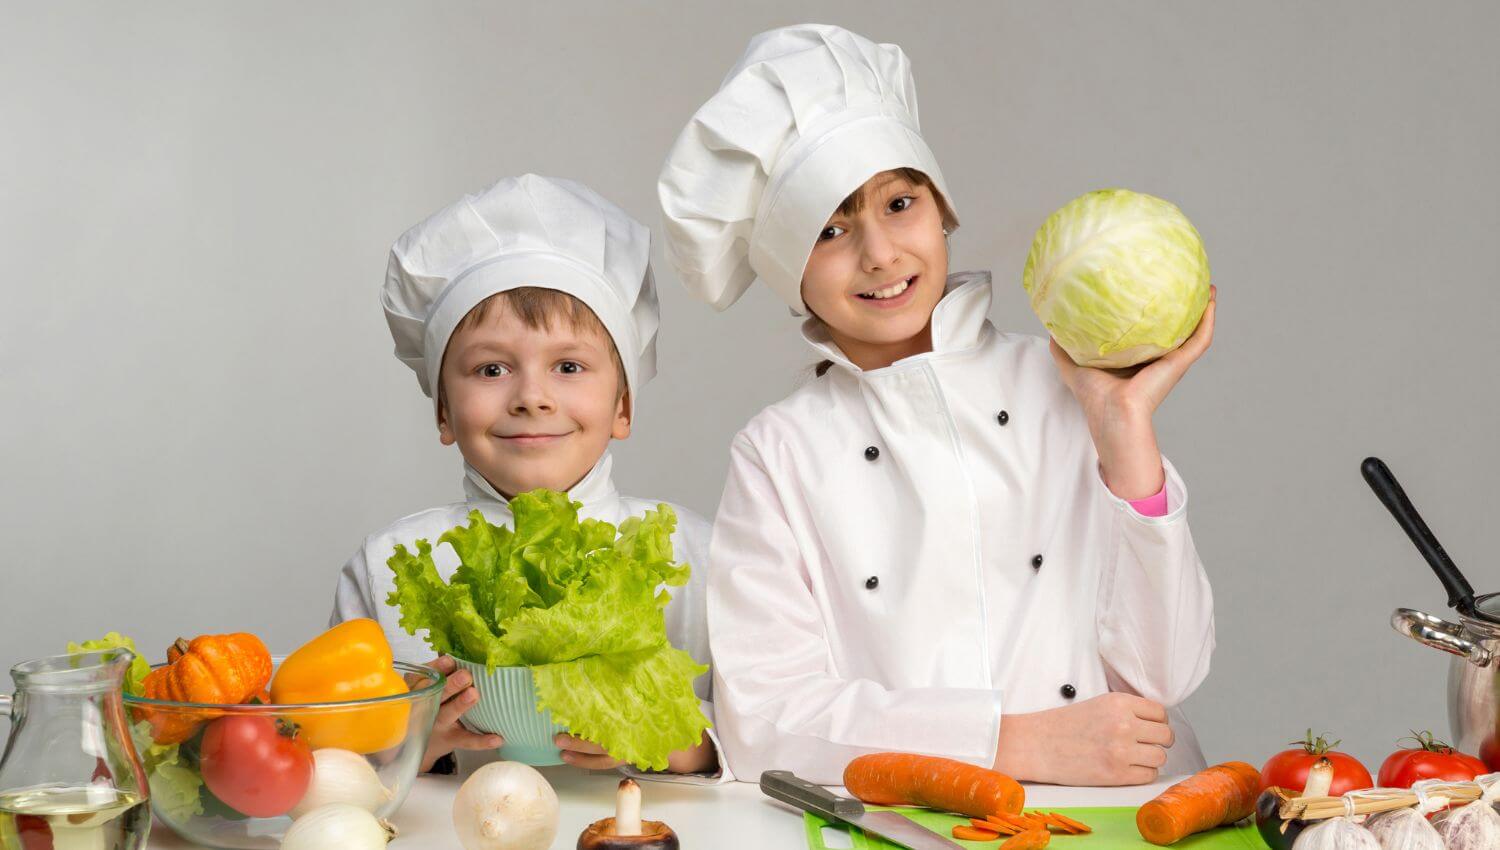 Enfant avec une tenue de cuisinier et en train de cuisiner 